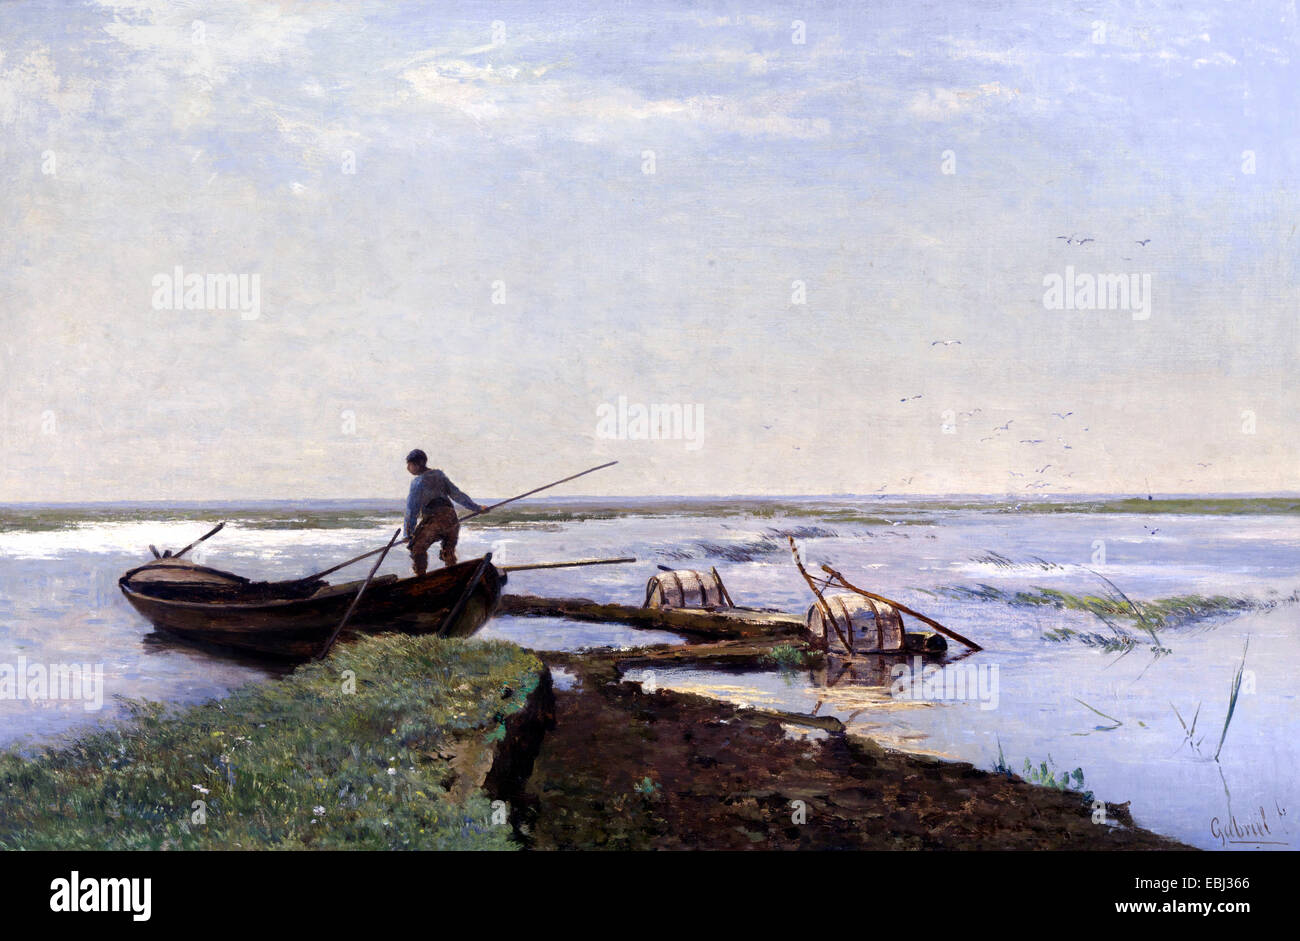 Paul Gabriel, paysage de polders. Circa 1880-1900. Huile sur toile. Le Musée Boijmans Van Beuningen, Rotterdam, Pays-Bas. Banque D'Images